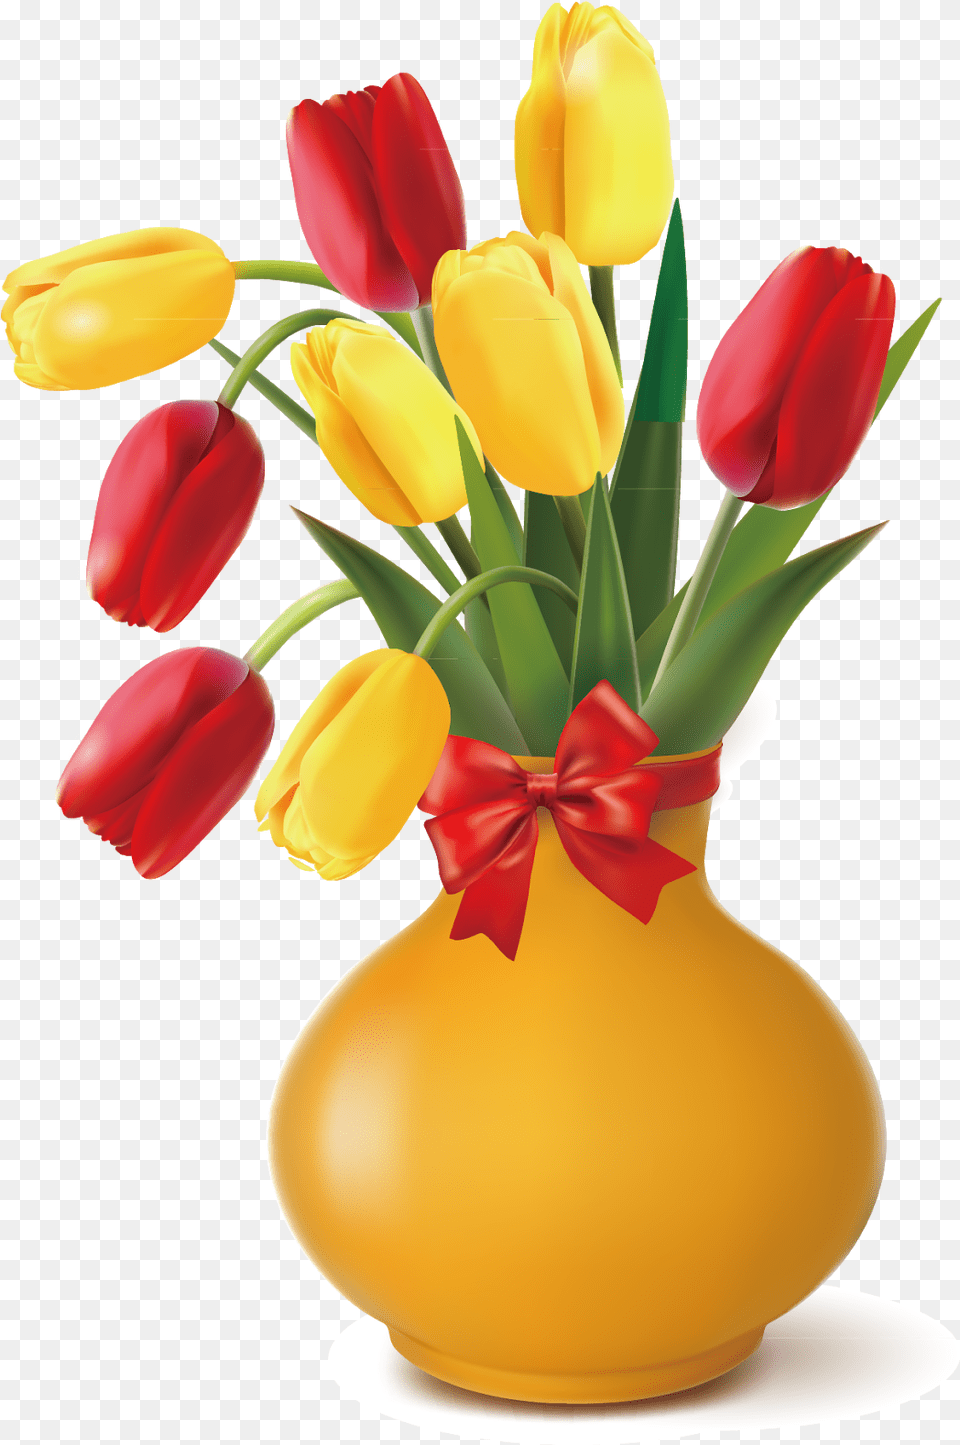 Red Tulip Tulip Flower Bouquet Clip Art Flower Pot Vector Flower Vase, Flower Arrangement, Flower Bouquet, Jar, Plant Free Png